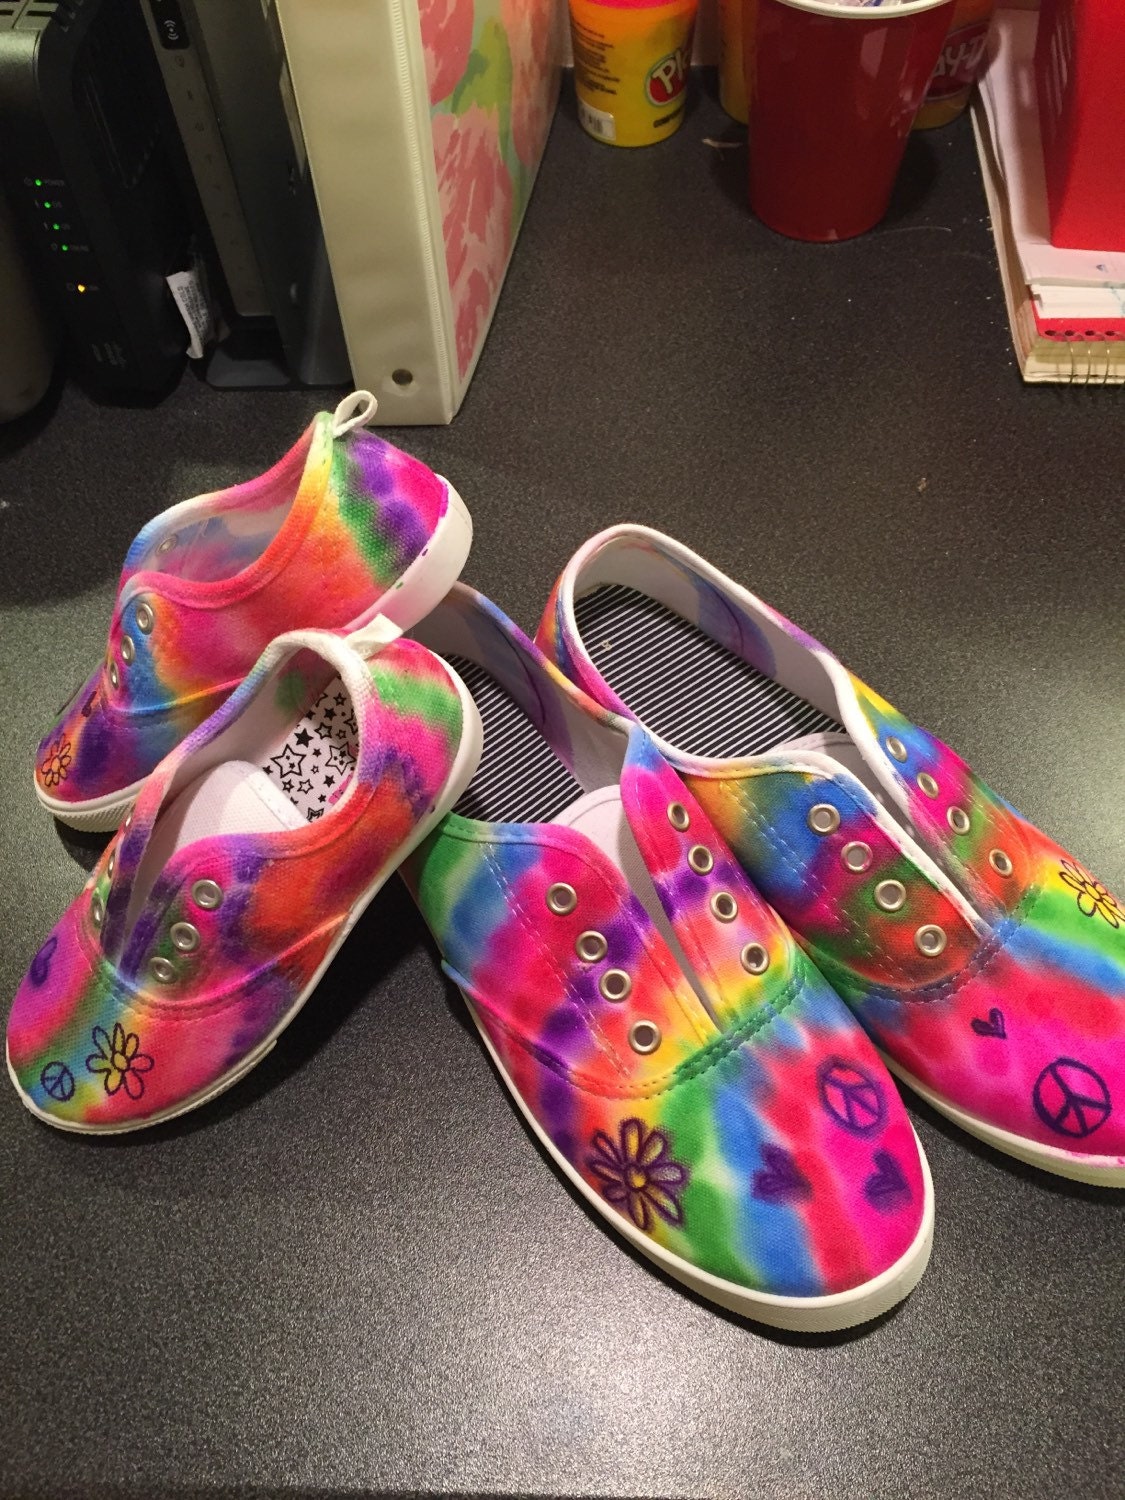 Tye-dye shoes / Hippie Feet